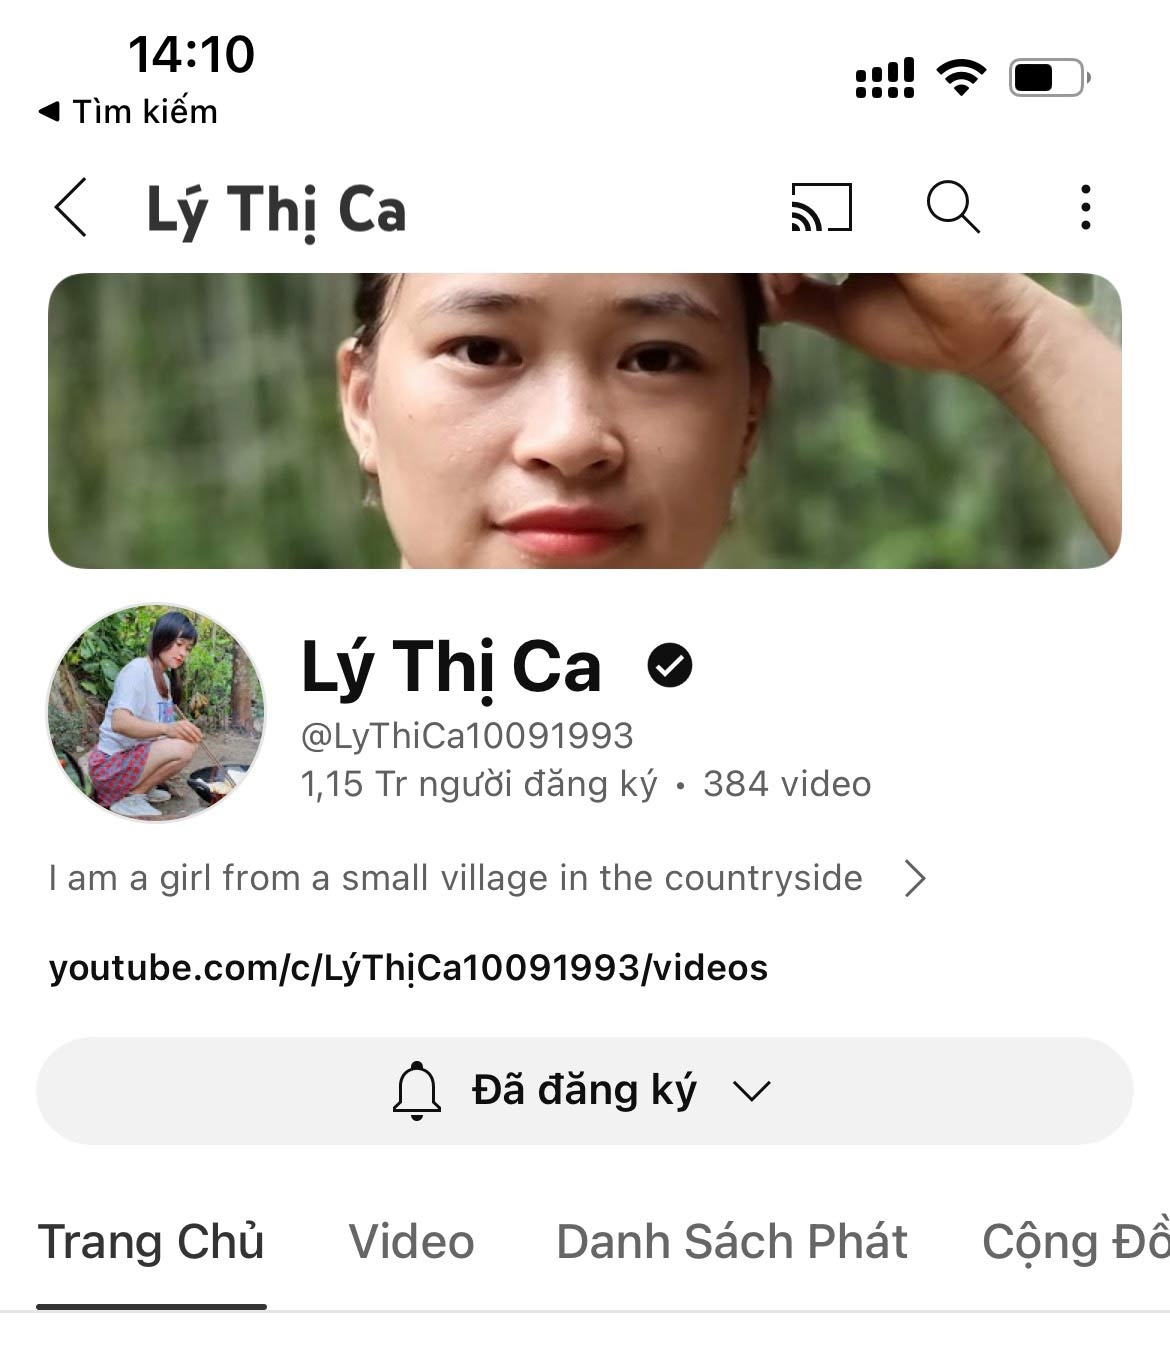  Kênh youtube Lý Thị Ca của Triệu Mạnh Dương, thôn Khau Cau, xã Phúc Yên (Lâm Bình) được cộng đồng mạng khắp nơi trên thế giới yêu thích.